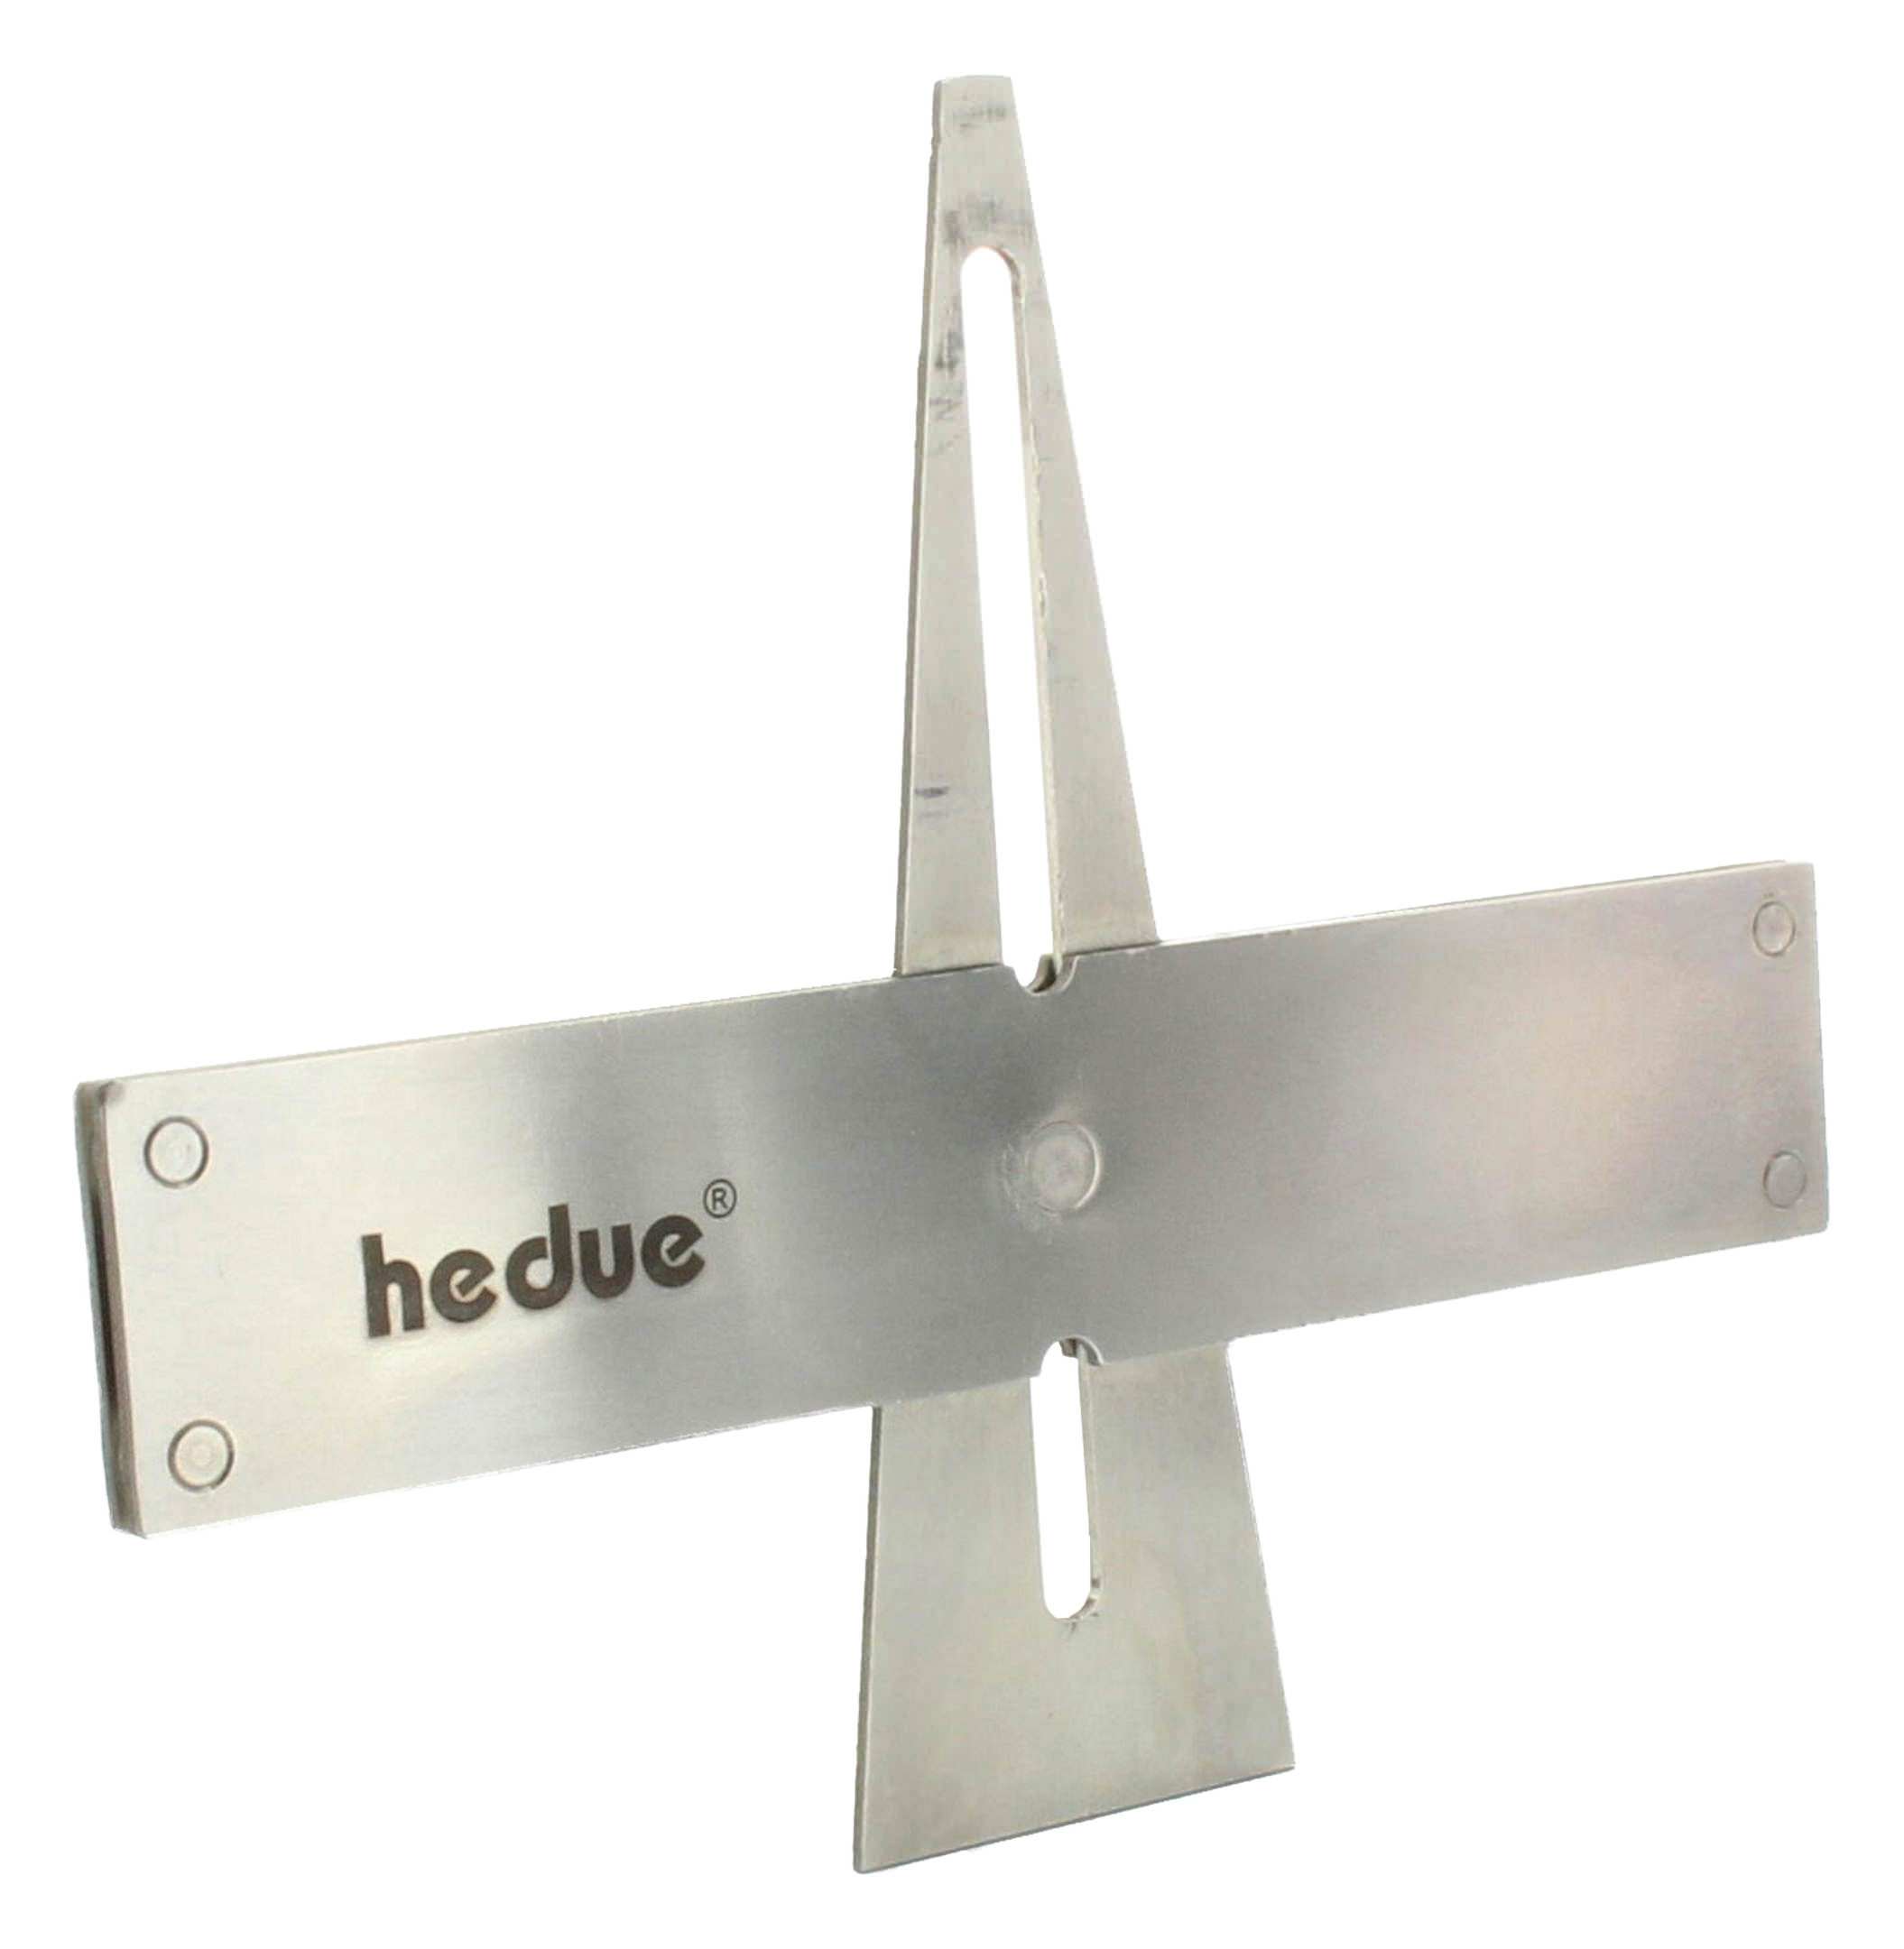 hedue® Tischlerwinkel Set A031 - Tischler Werkzeug Set mit